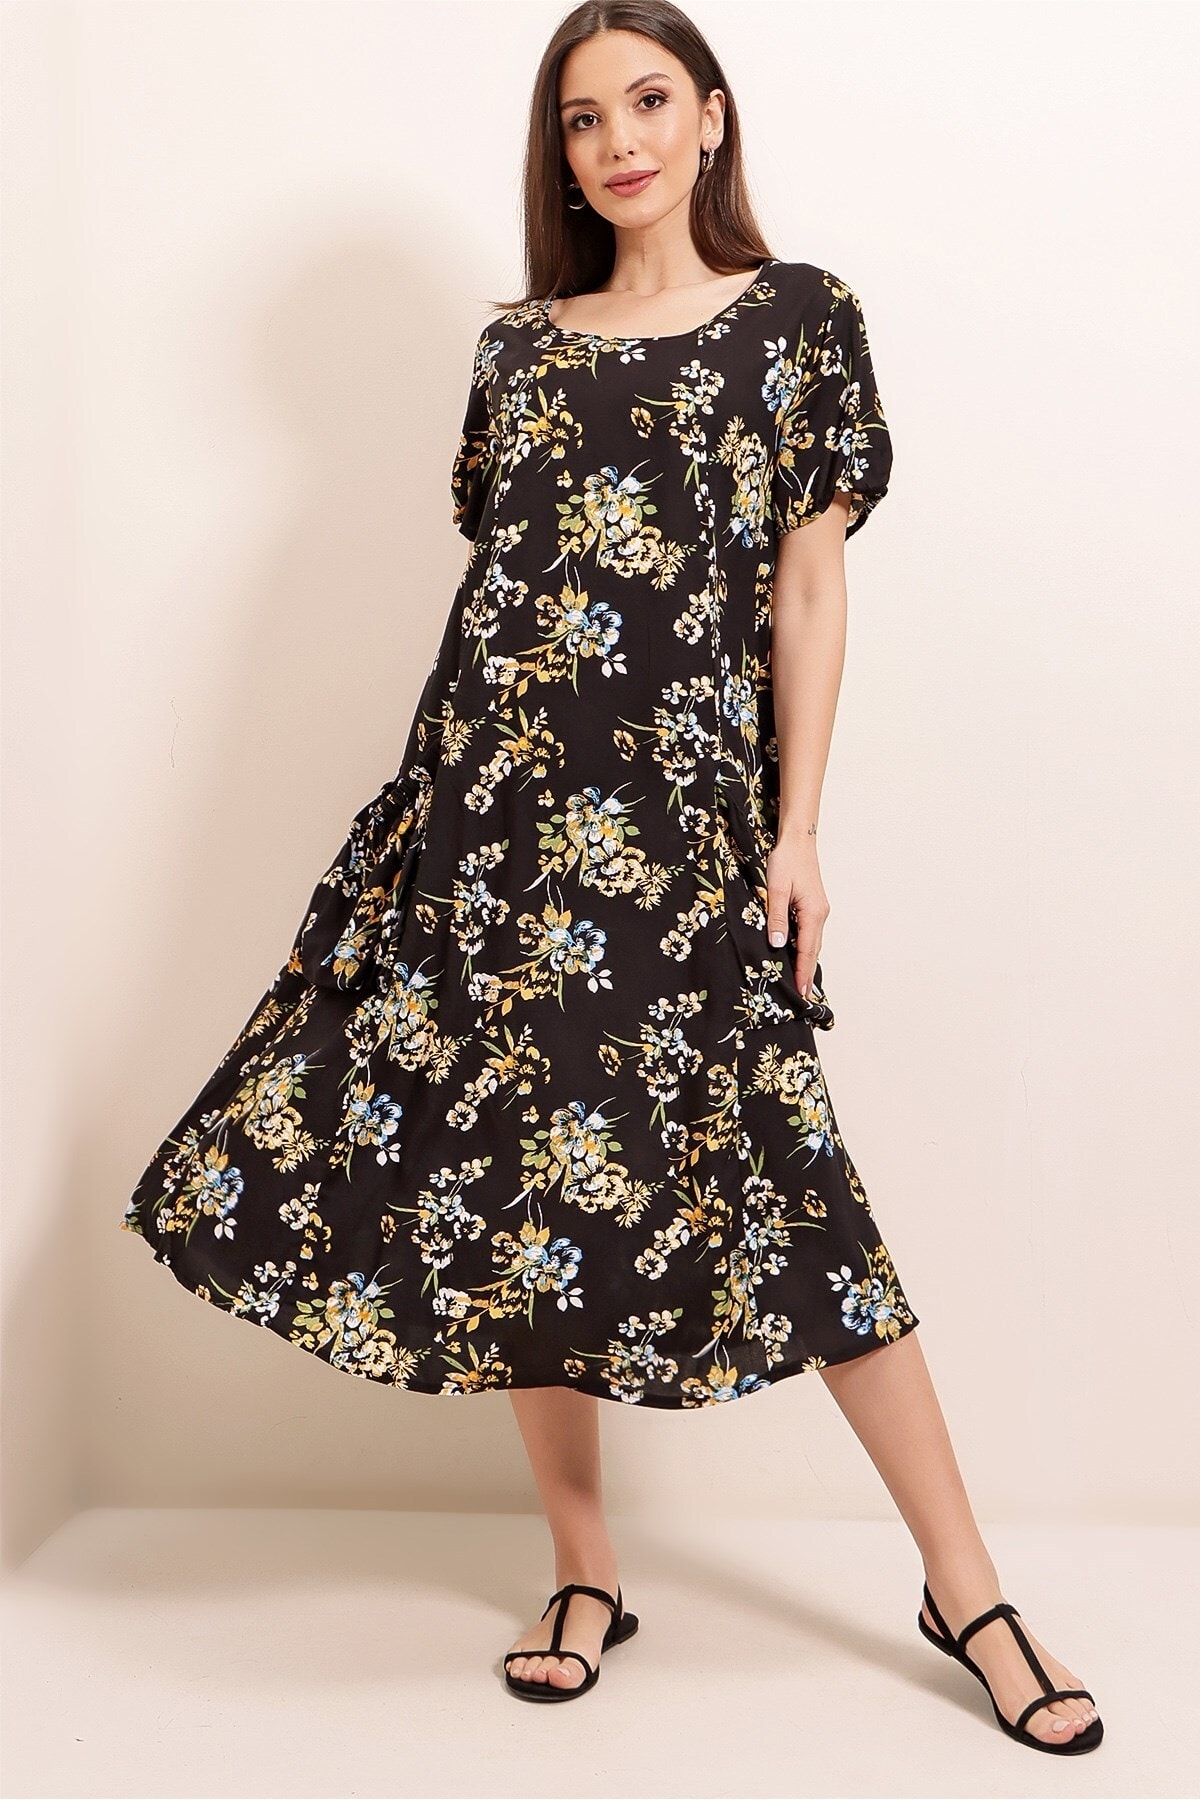 By Saygı Floral Pattern Elastic Pocket Oversize Viscose Dress Black